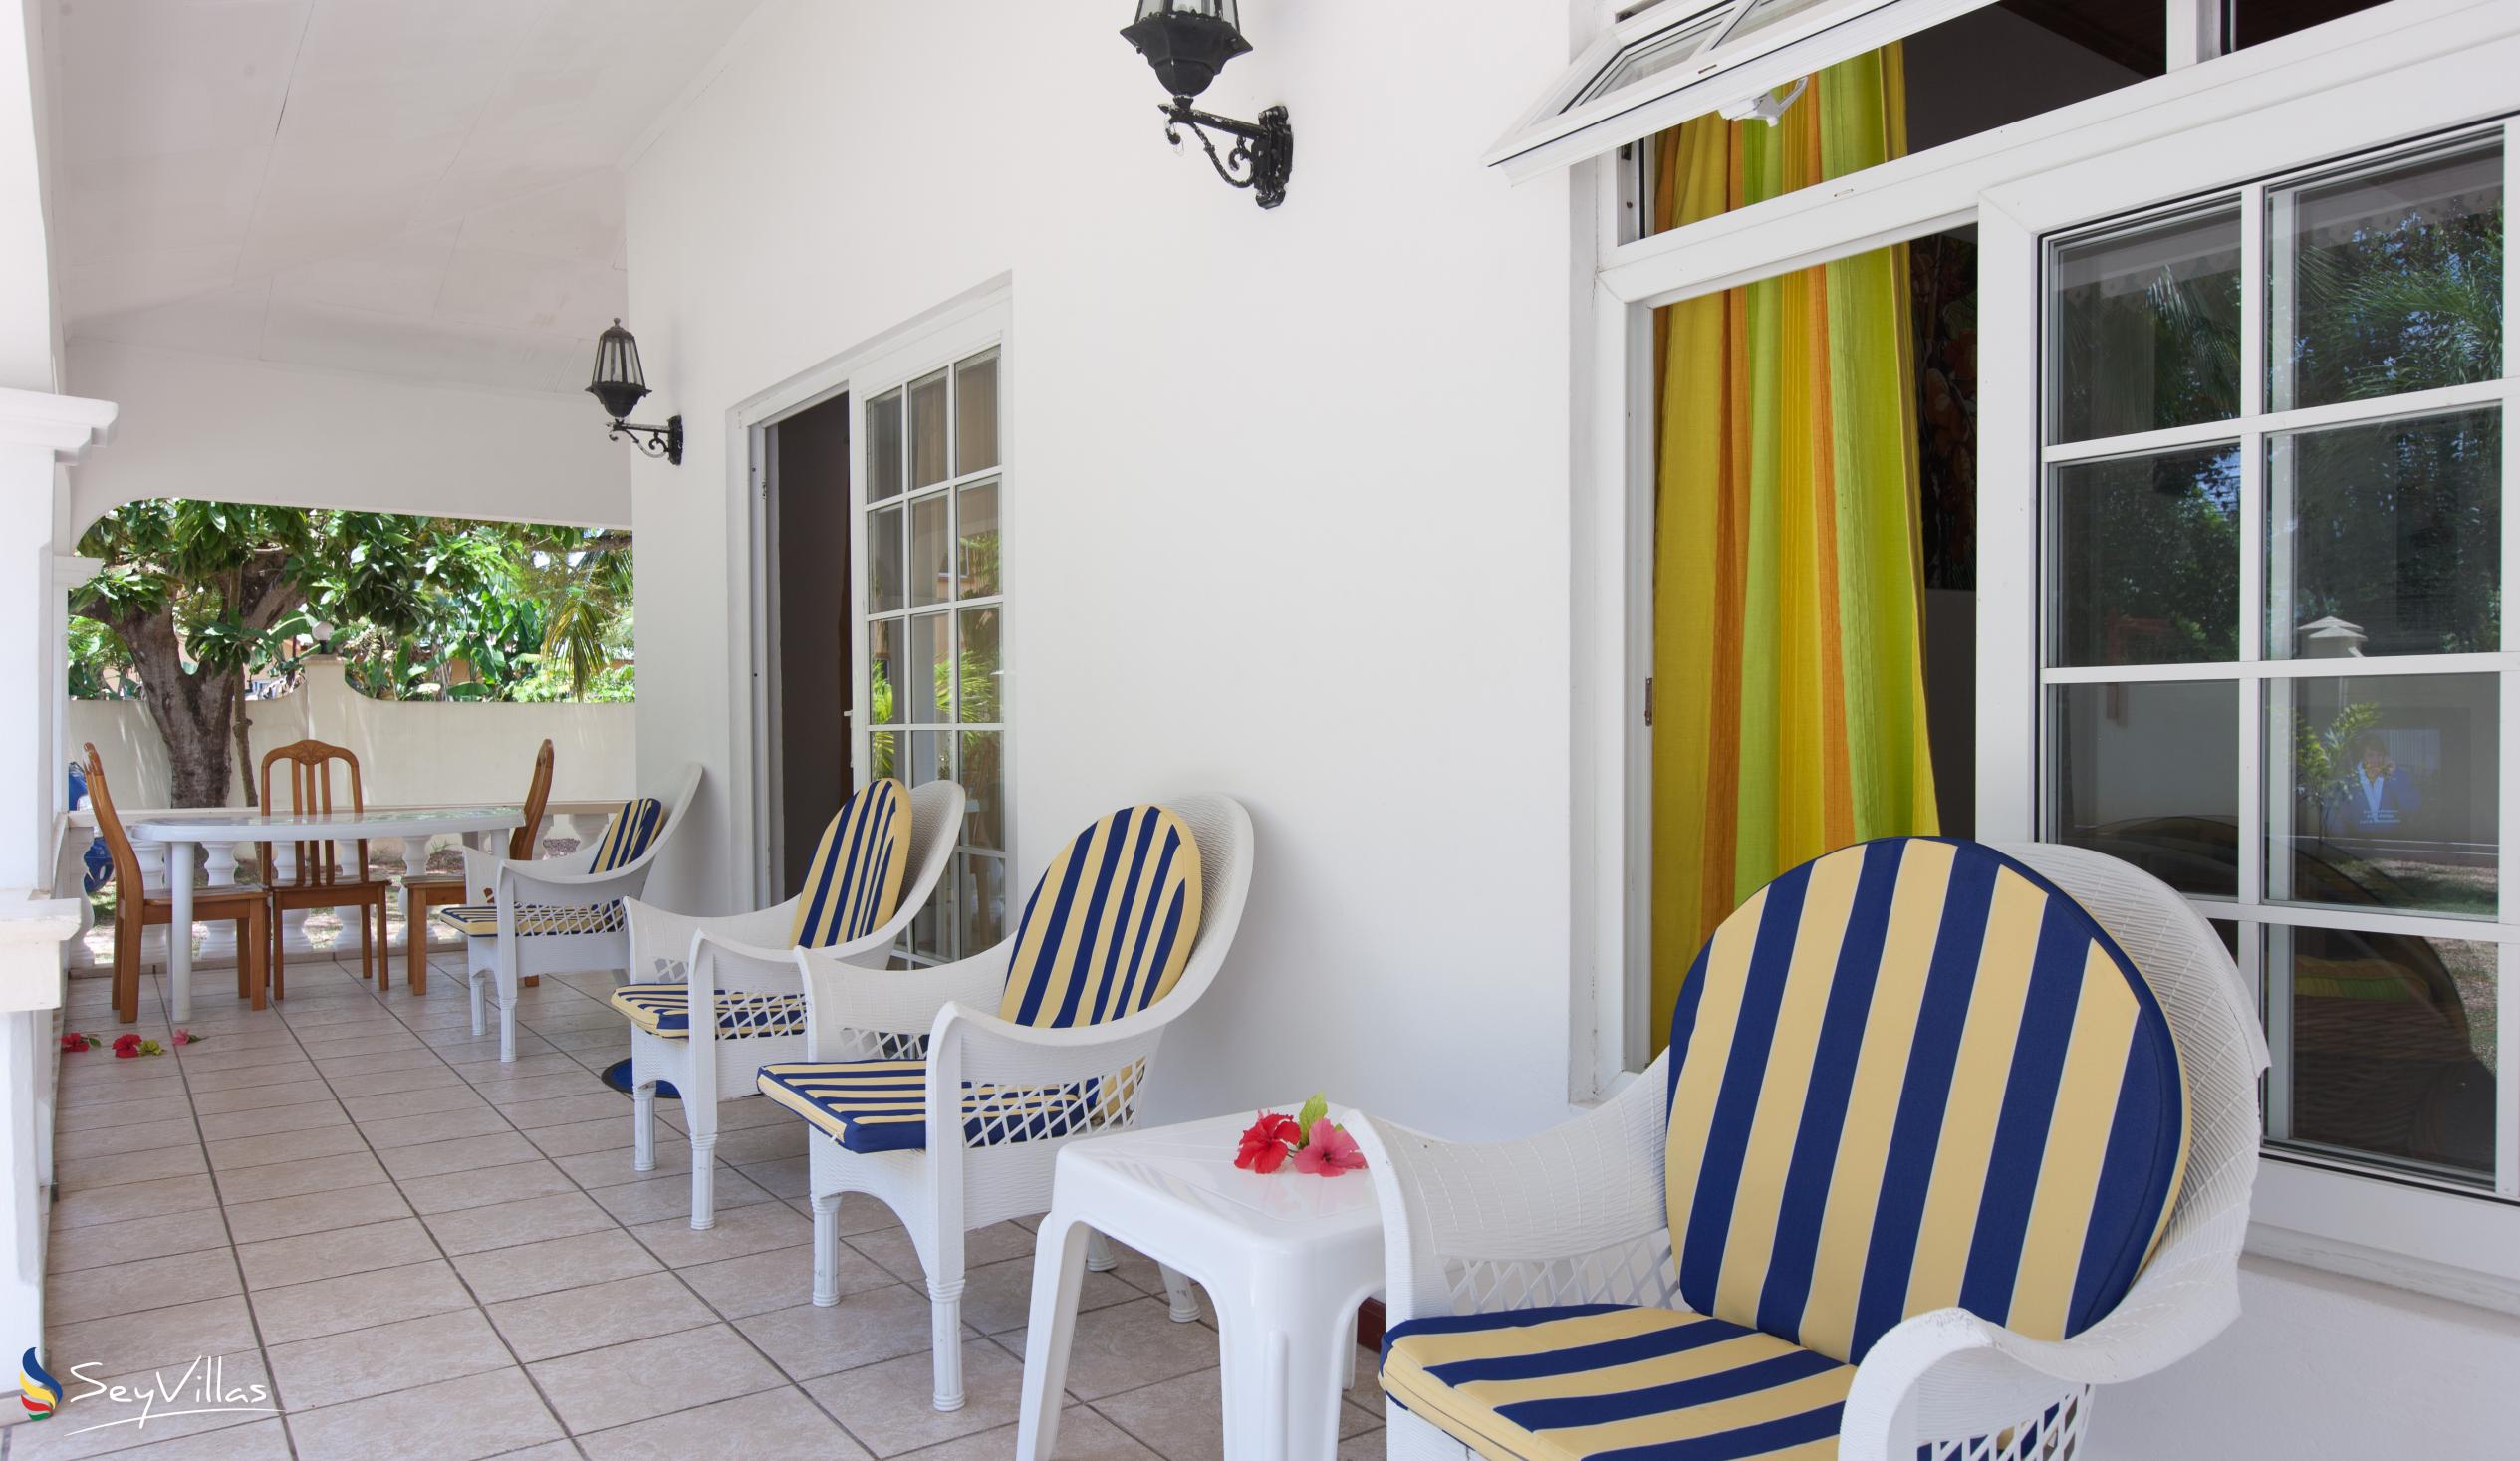 Photo 13: Villa Confort - Outdoor area - Praslin (Seychelles)